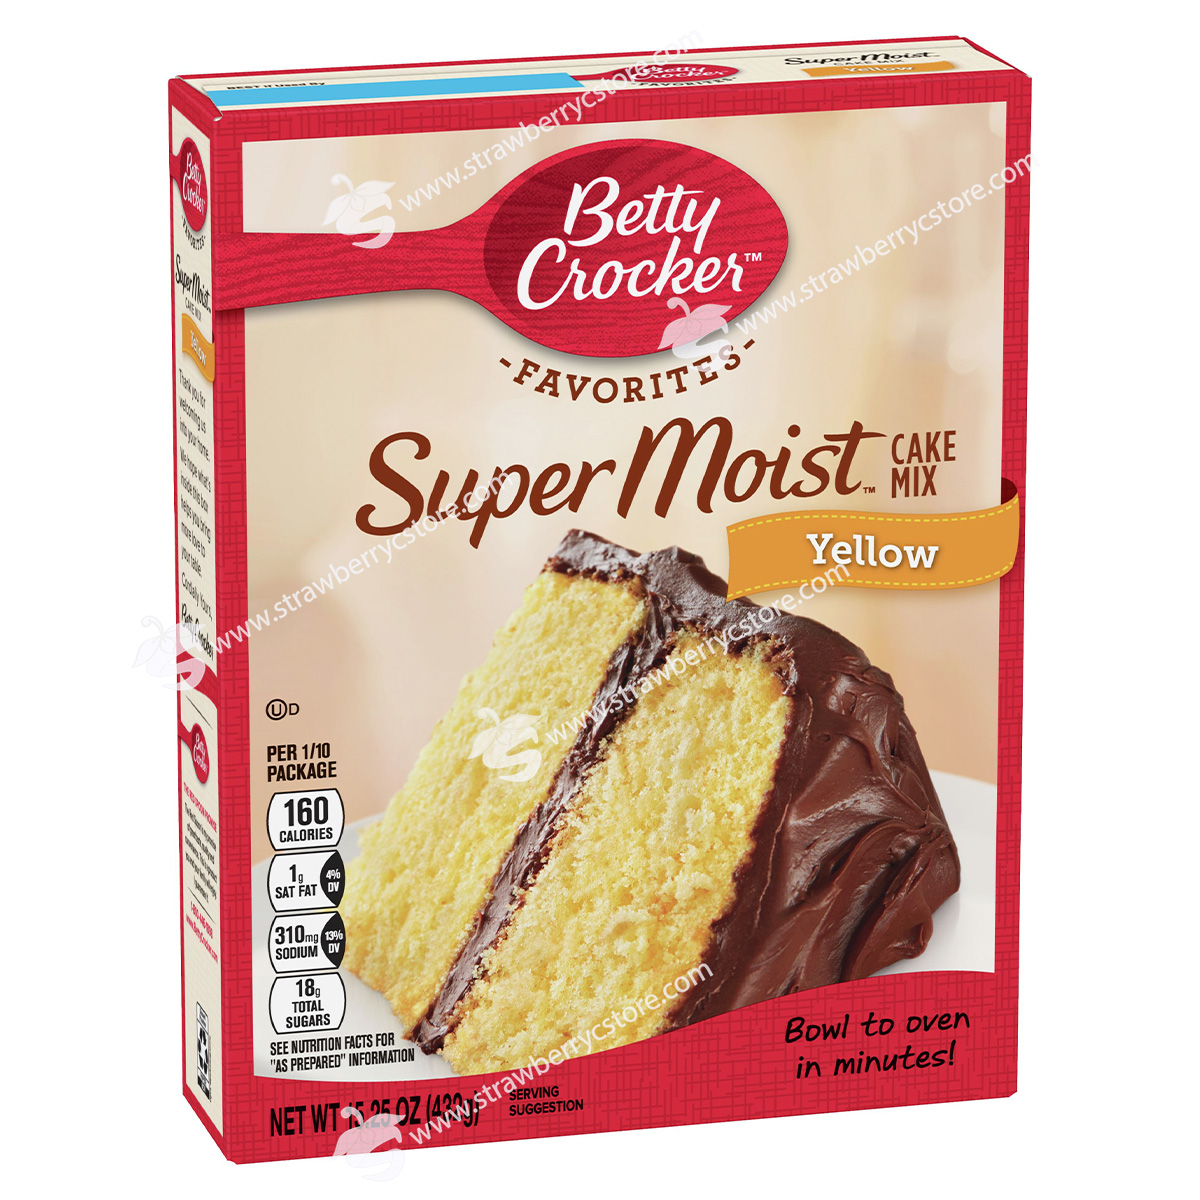 Bột Làm Bánh Pha Sẵn Betty CrockerTM Super MoistTM Favorites Yellow Cake